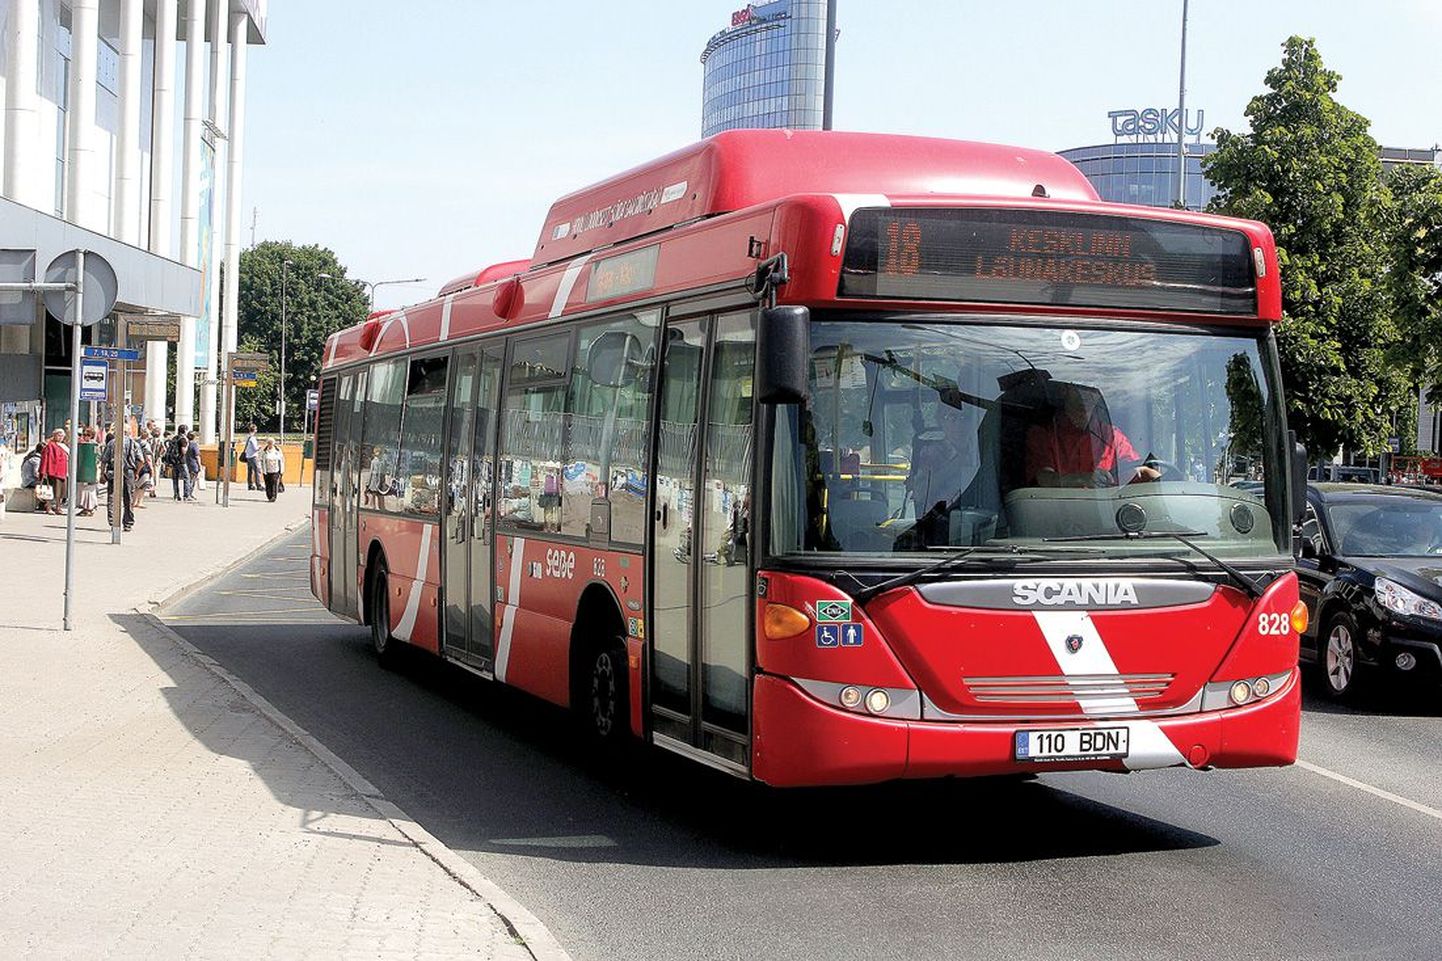 Sebe senised linnaliinibussid peaksid kehtiva lepingu järgi sõitma Tartus tuleva aasta juuni lõpuni, kuid kuna uus bussihange on vaidlustesse takerdunud, valmistub linn Sebega lepingut pikendama.